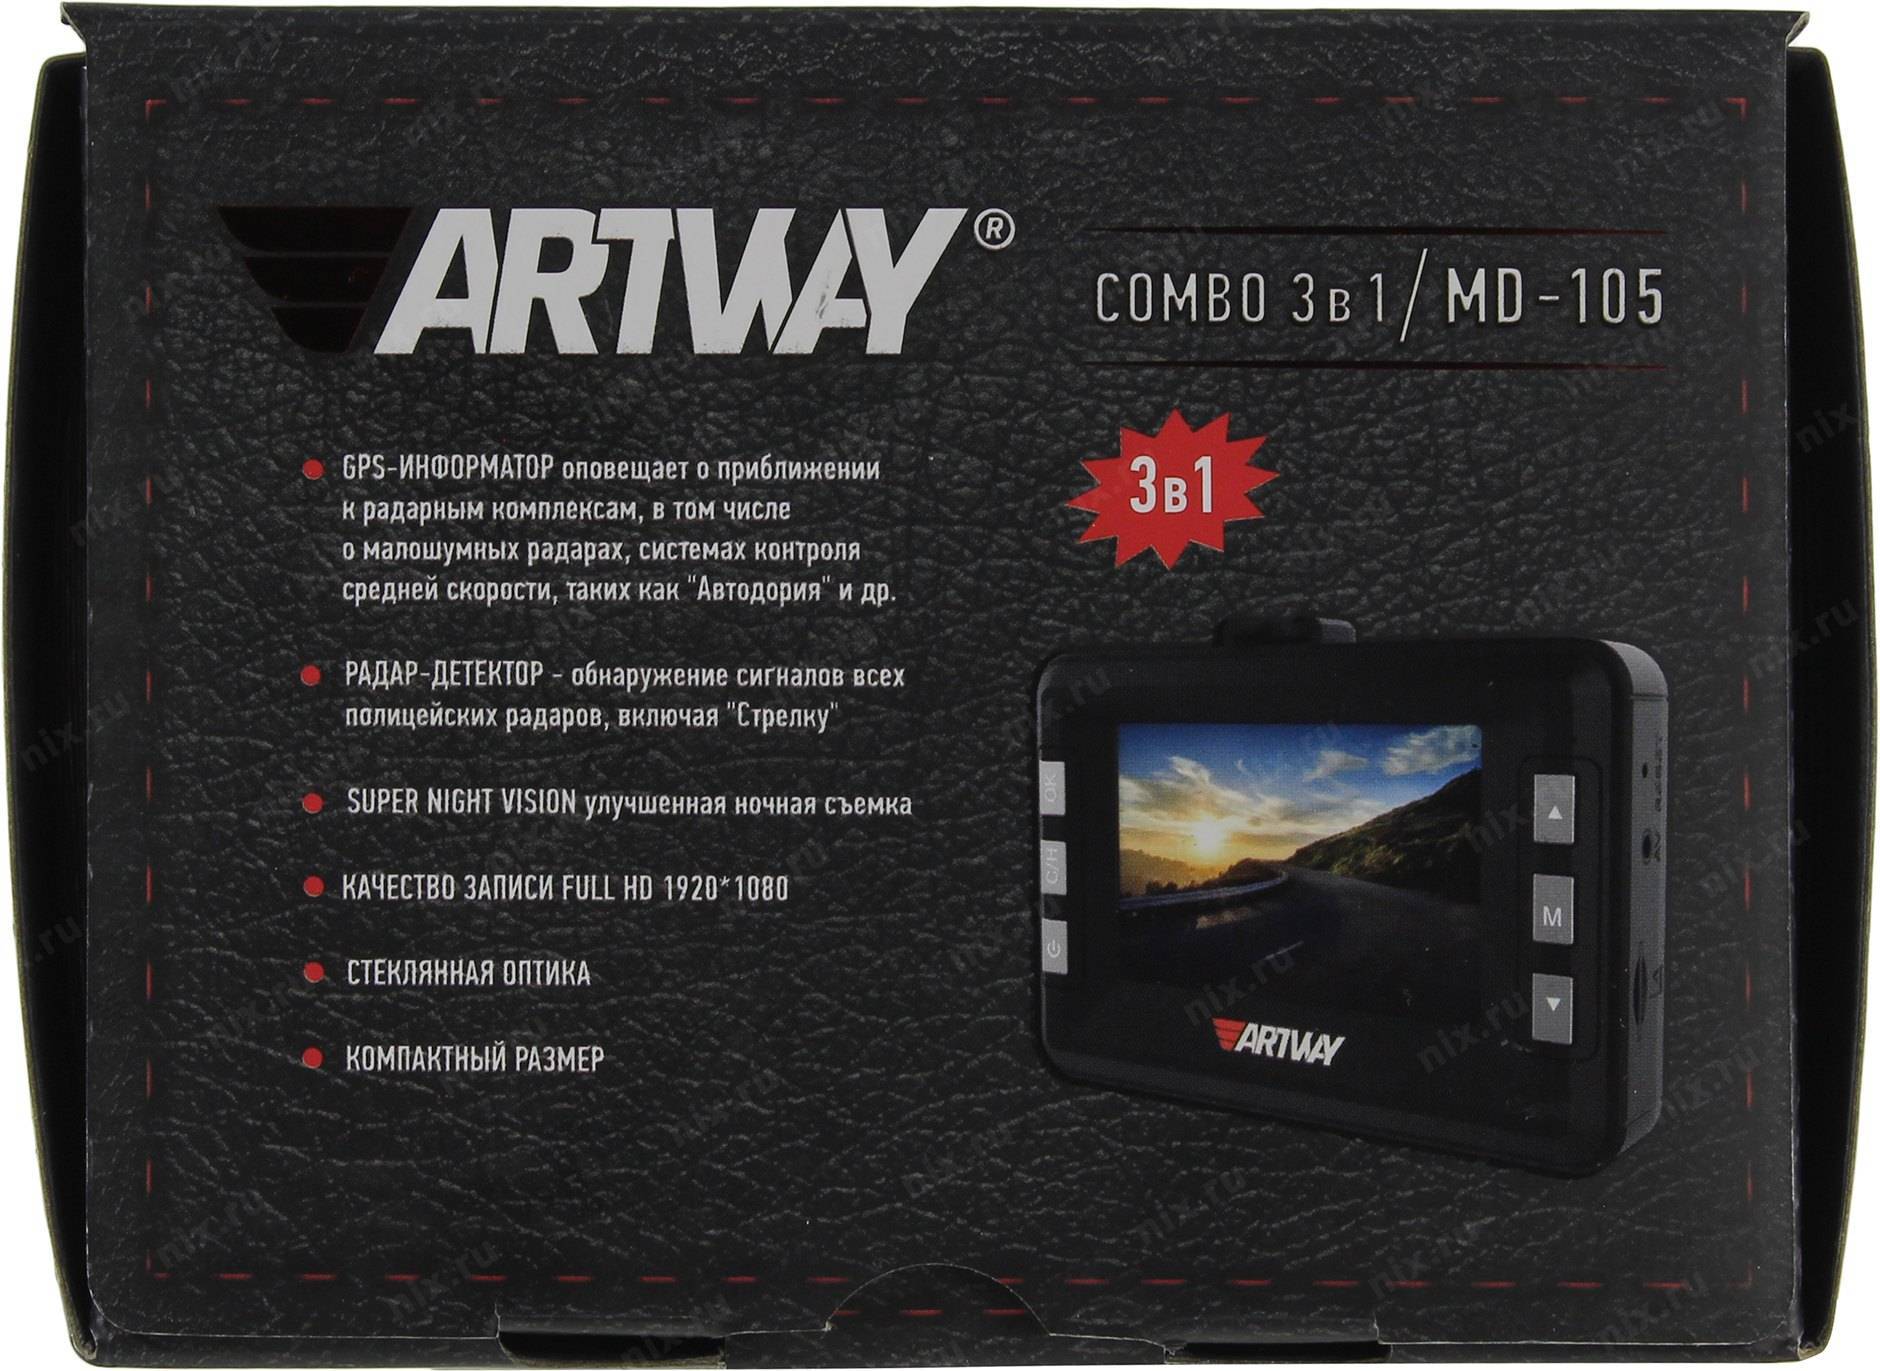 Отзывы на artway md-107 от владельцев видеорегистратора с радар-детектором